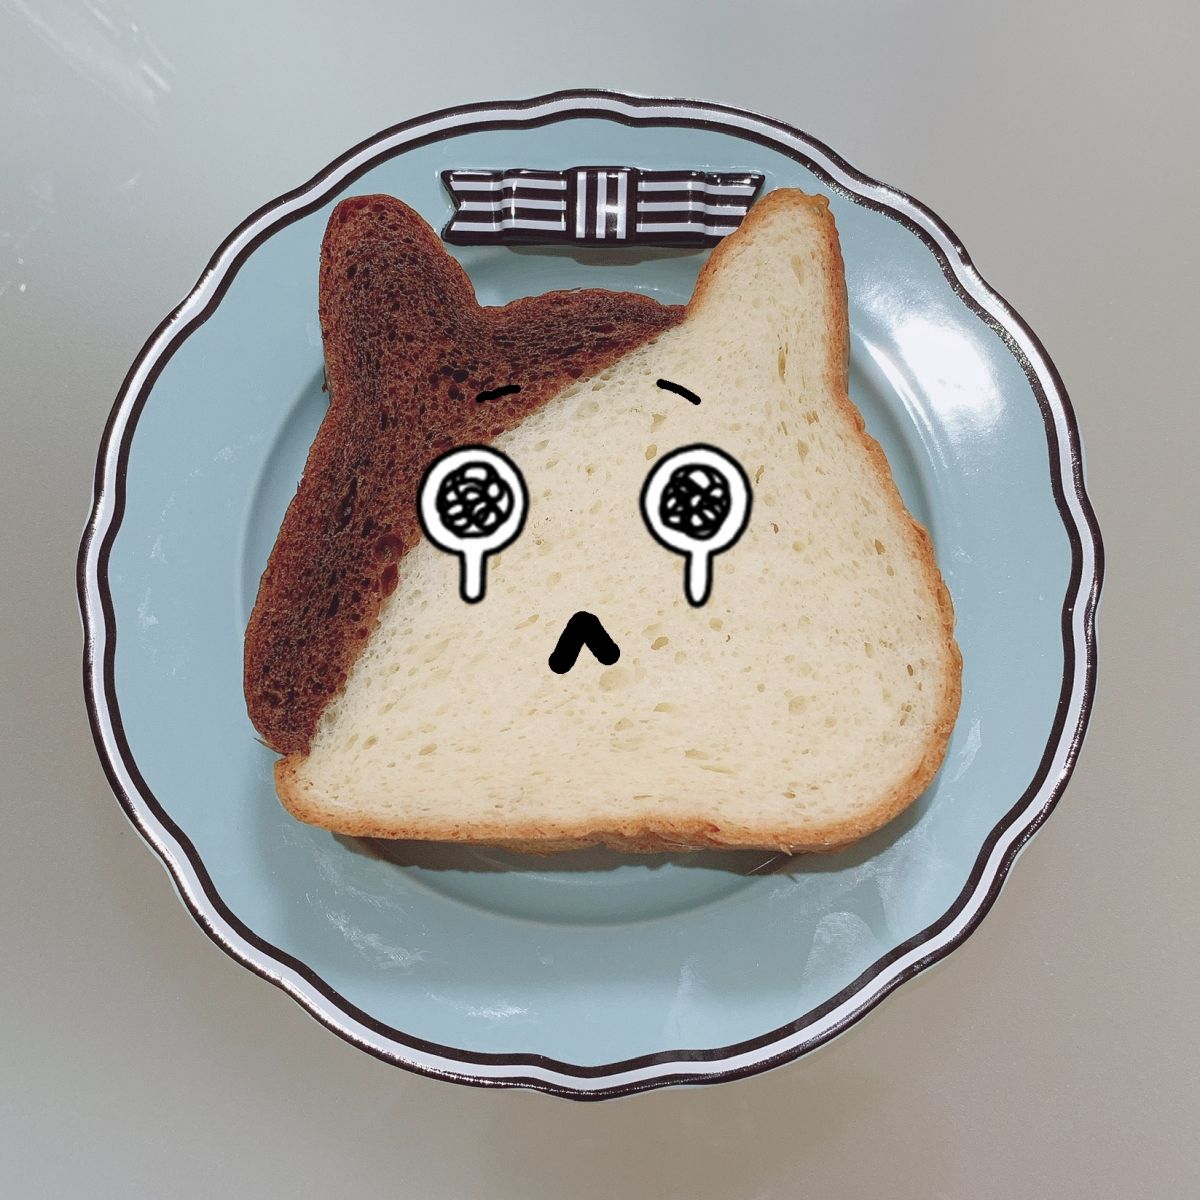 名古屋 ねこねこ 食パン 話題の猫形食パン専門店『ねこねこ食パン』が名古屋初出店！栄に2020年2月17日オープン。